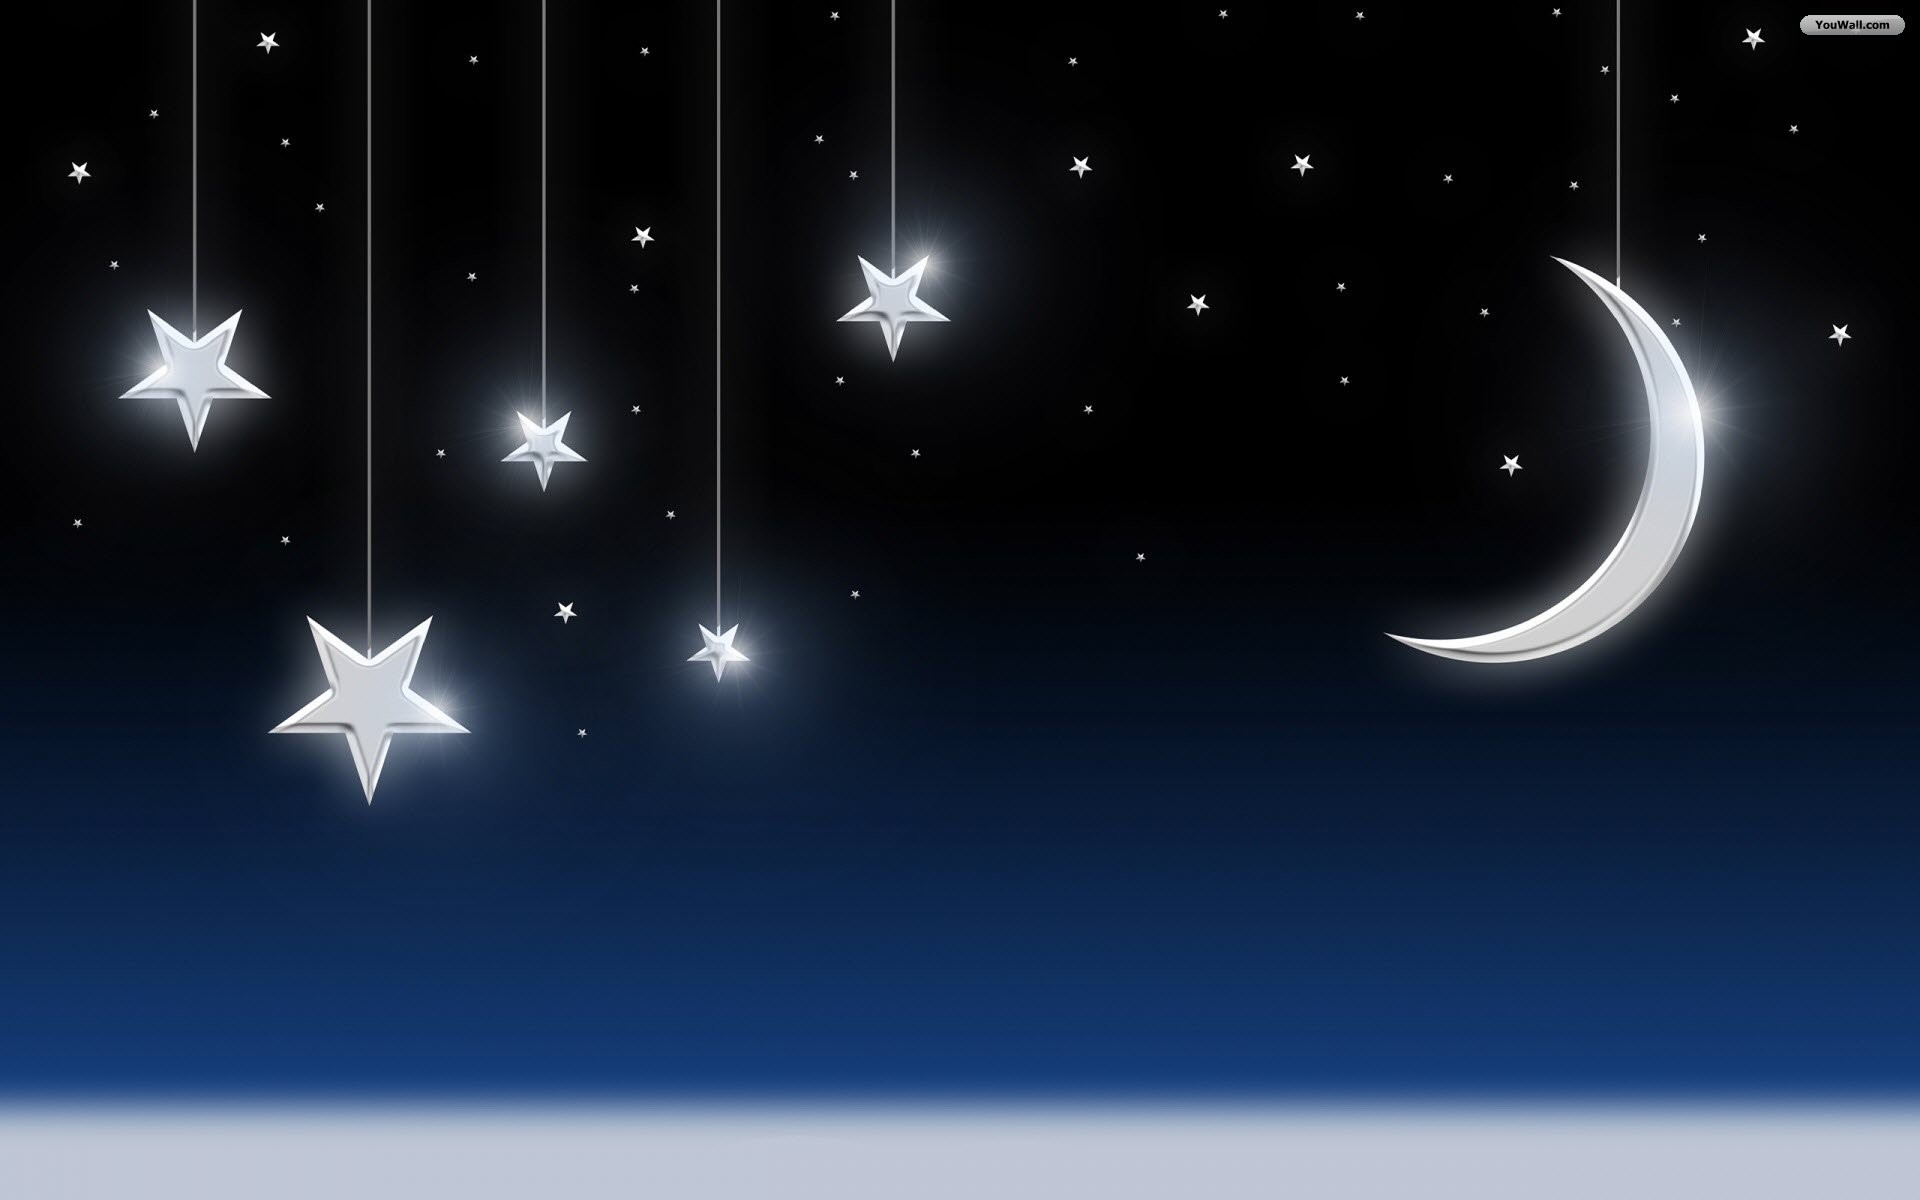 1920x1200 Moon and Stars Desktop Wallpaper - WallpaperSafari